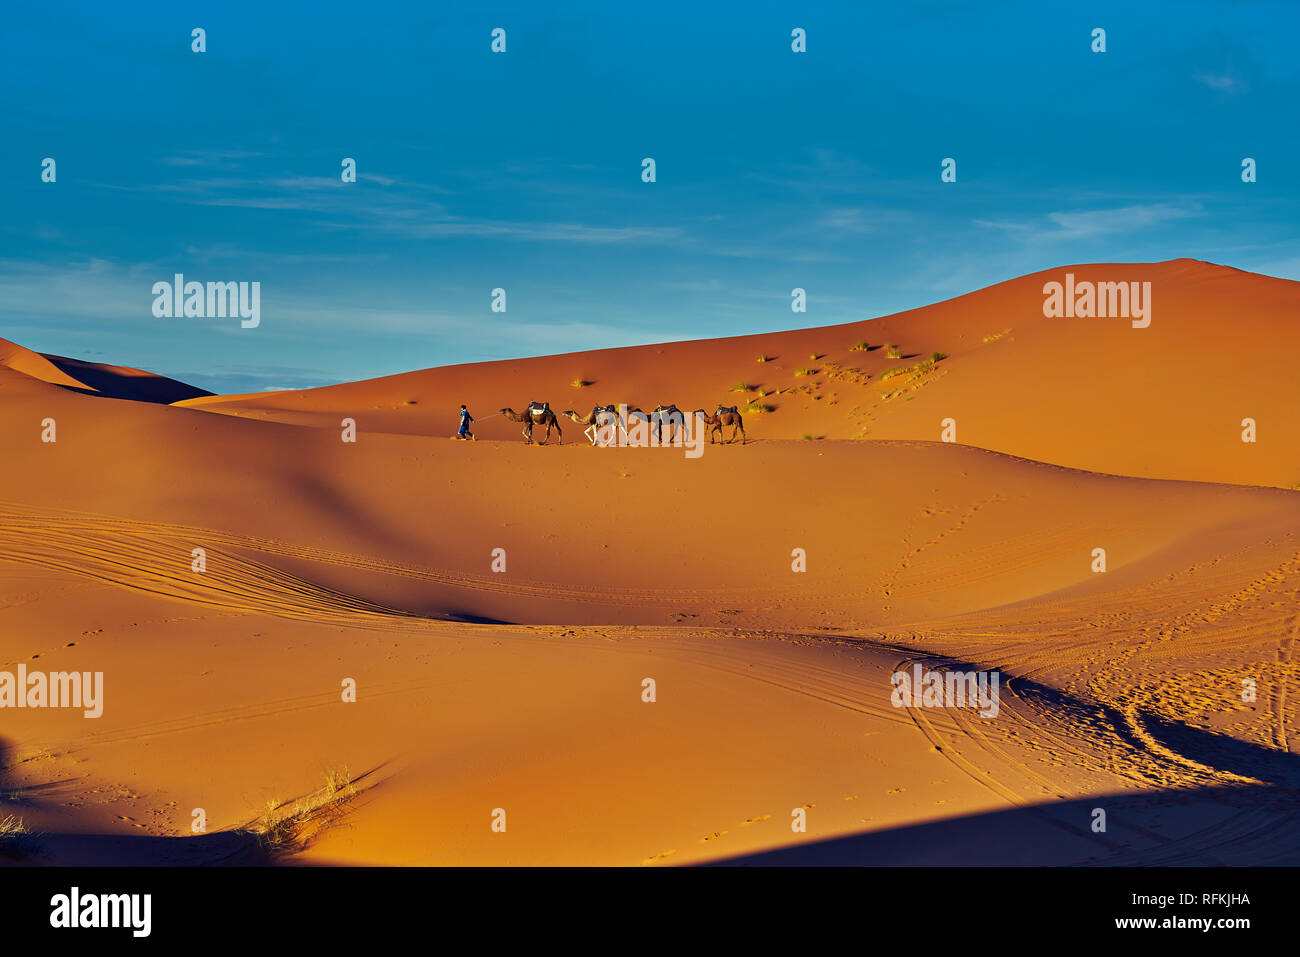 Cammello caravan sotto il sole. La foto del paesaggio desertico è stata scattata a Erg Chebbi, vicino alla città di Merzouga, nel deserto del Sahara, in Marocco. Foto Stock